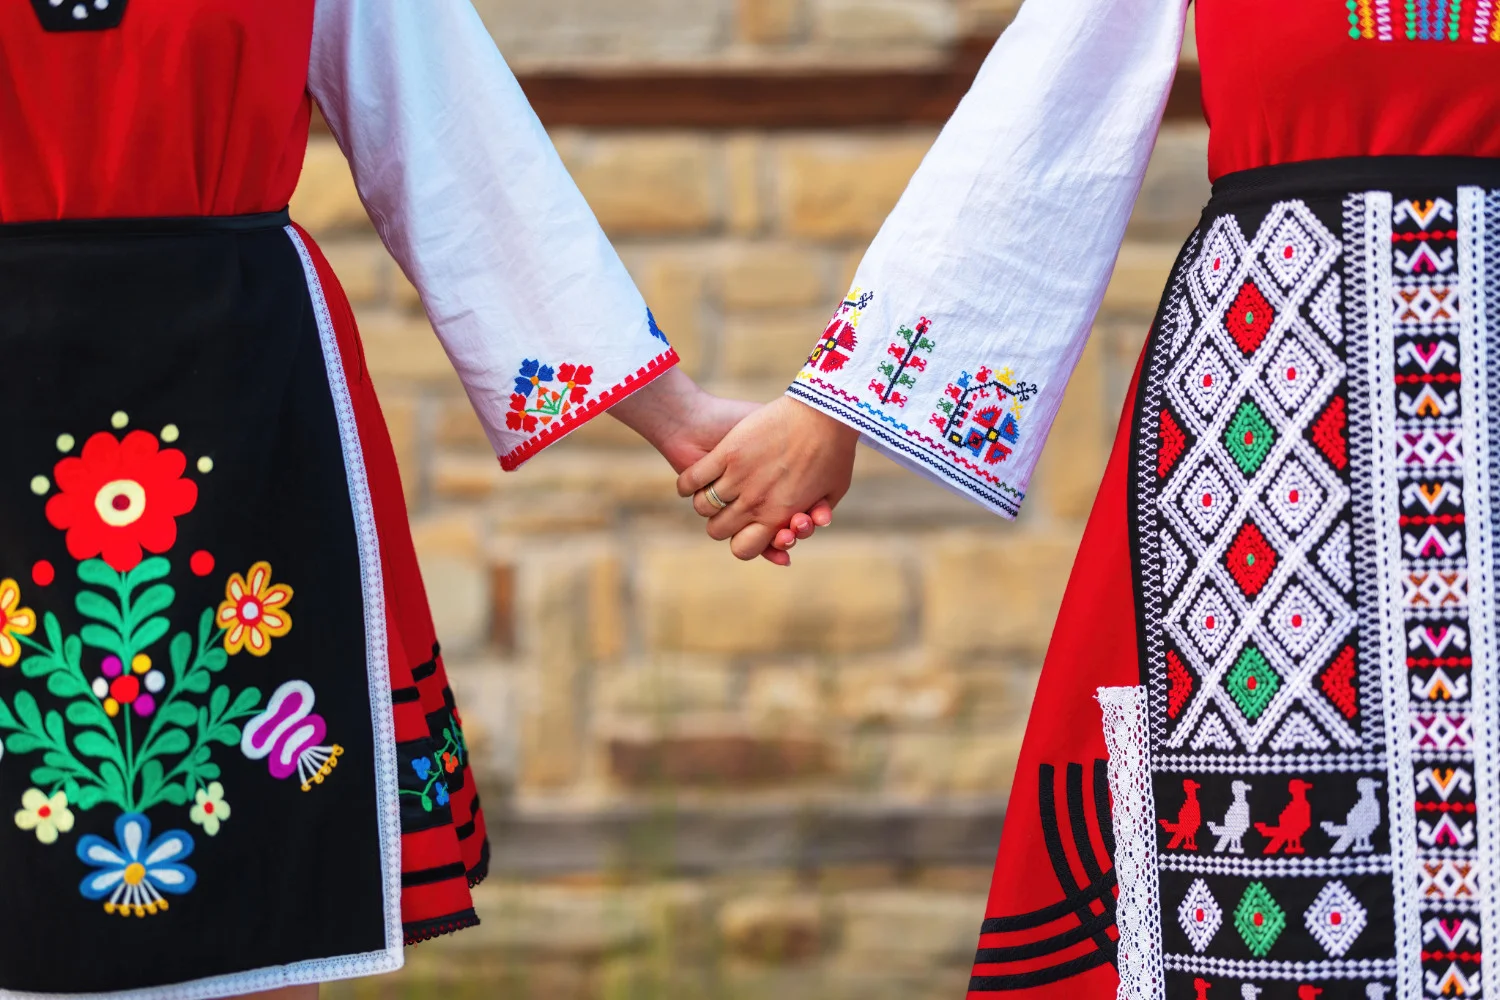 Initiativele culturale transfrontaliere promoveaza întelegerea prin dialog, recunoscand in acelasi timp punctele comune in ceea ce priveste patrimoniul si traditiile celor doua natiuni, Bulgaria si Serbia.